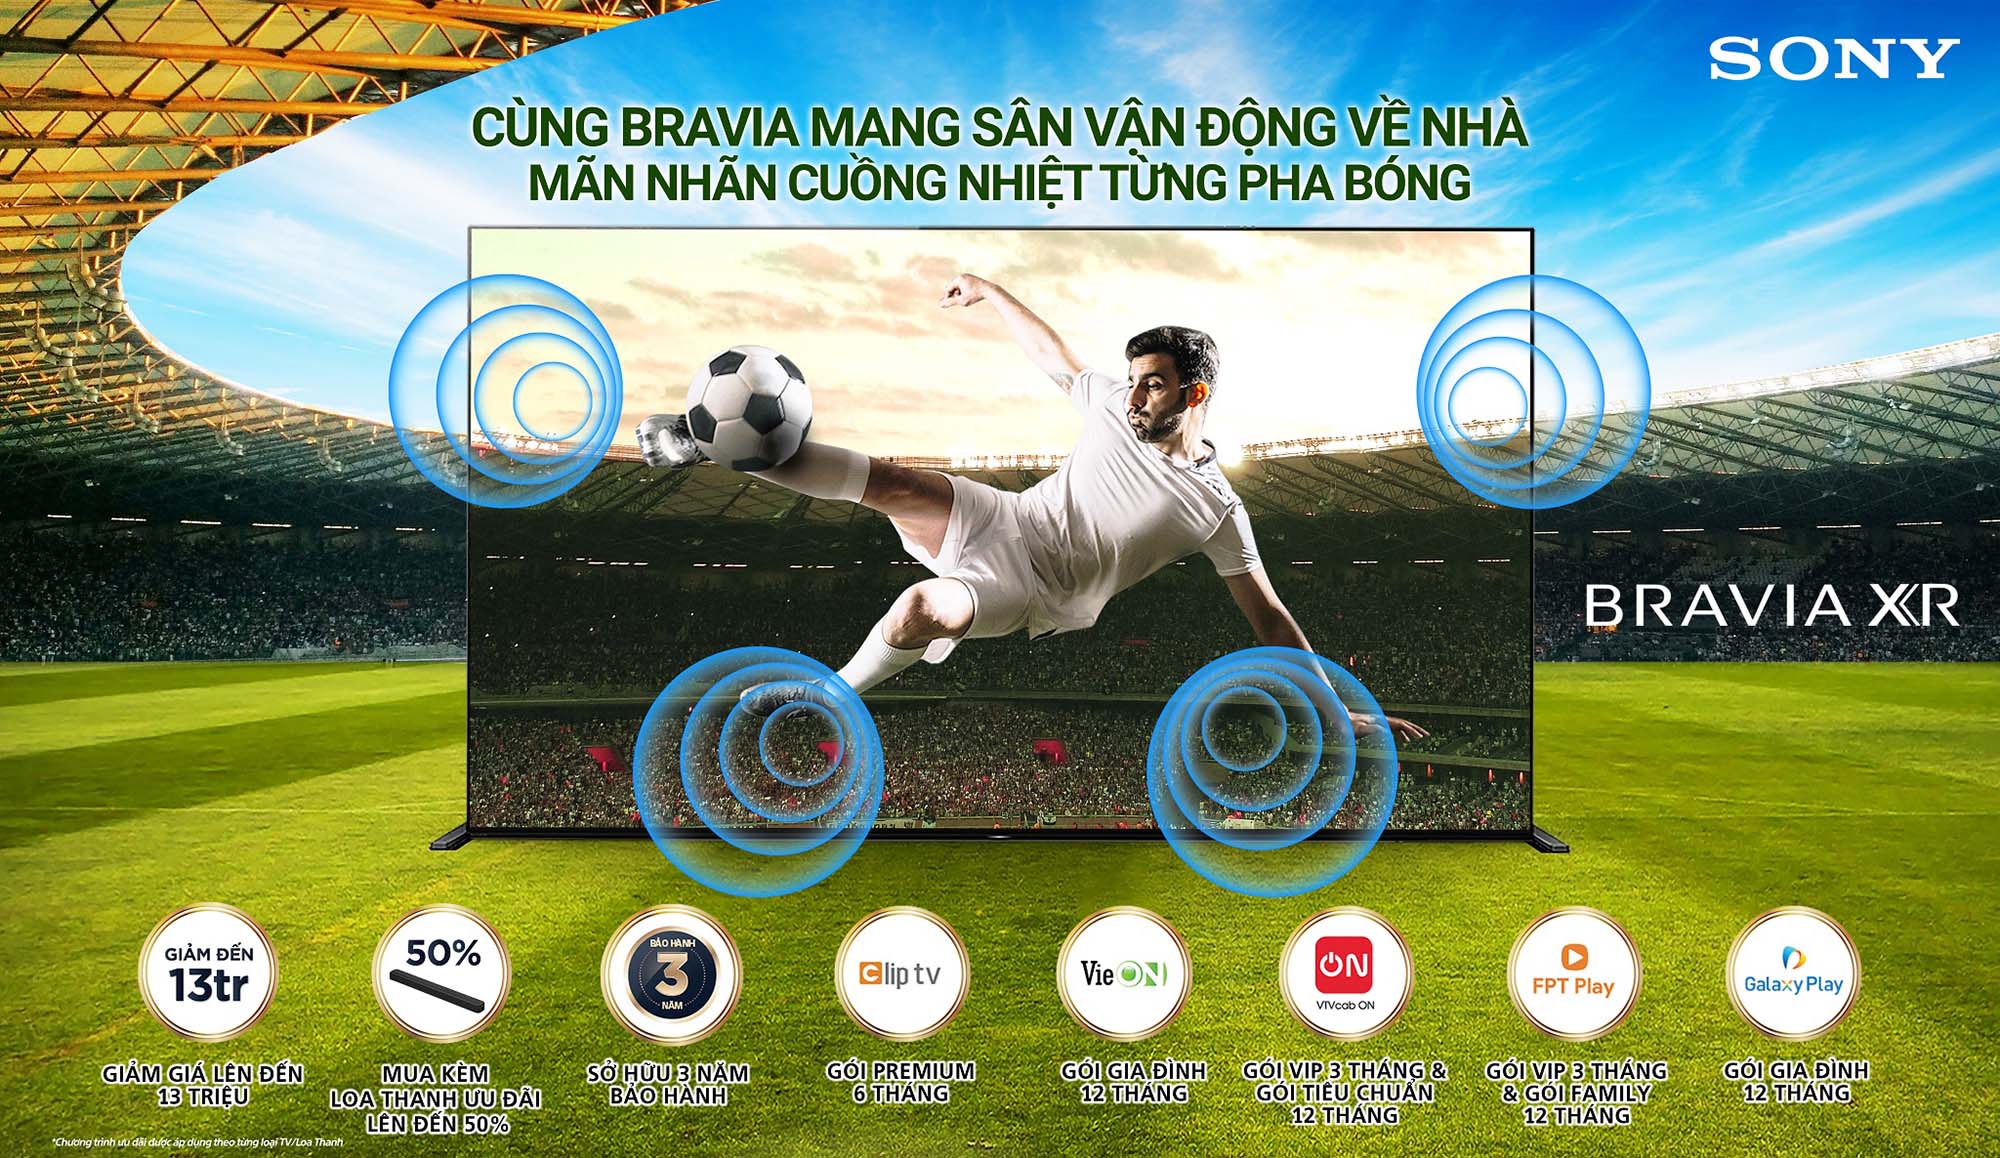 Sony Việt Nam ra mắt chương trình khuyến mãi hấp dẫn chào đón giải vô địch bóng đá Châu Âu 2021